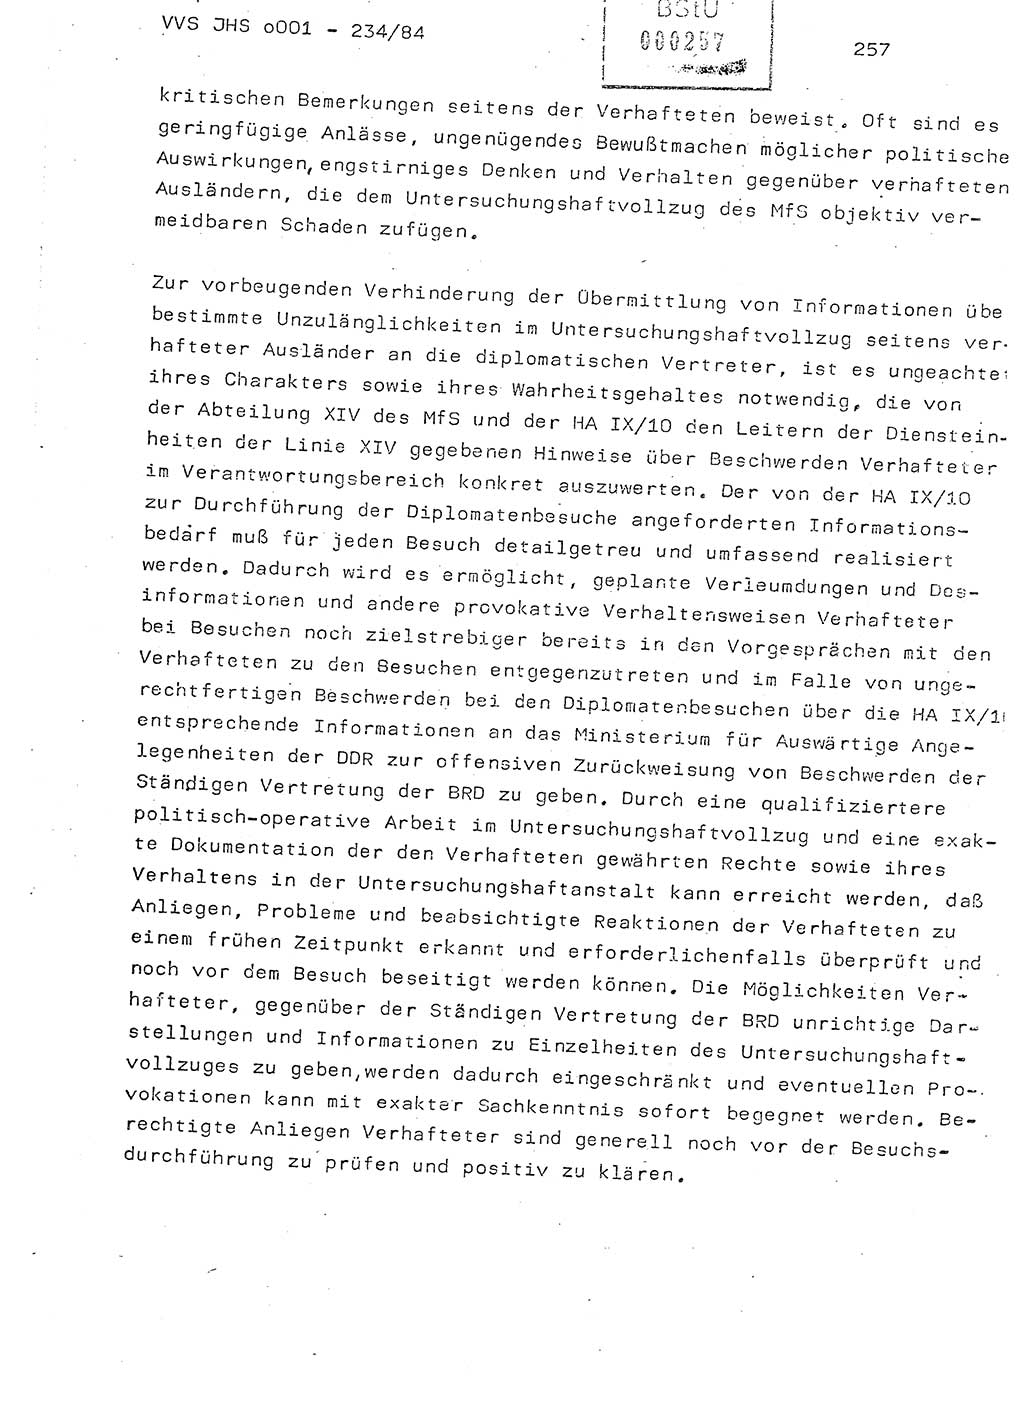 Dissertation Oberst Siegfried Rataizick (Abt. ⅩⅣ), Oberstleutnant Volkmar Heinz (Abt. ⅩⅣ), Oberstleutnant Werner Stein (HA Ⅸ), Hauptmann Heinz Conrad (JHS), Ministerium für Staatssicherheit (MfS) [Deutsche Demokratische Republik (DDR)], Juristische Hochschule (JHS), Vertrauliche Verschlußsache (VVS) o001-234/84, Potsdam 1984, Seite 257 (Diss. MfS DDR JHS VVS o001-234/84 1984, S. 257)